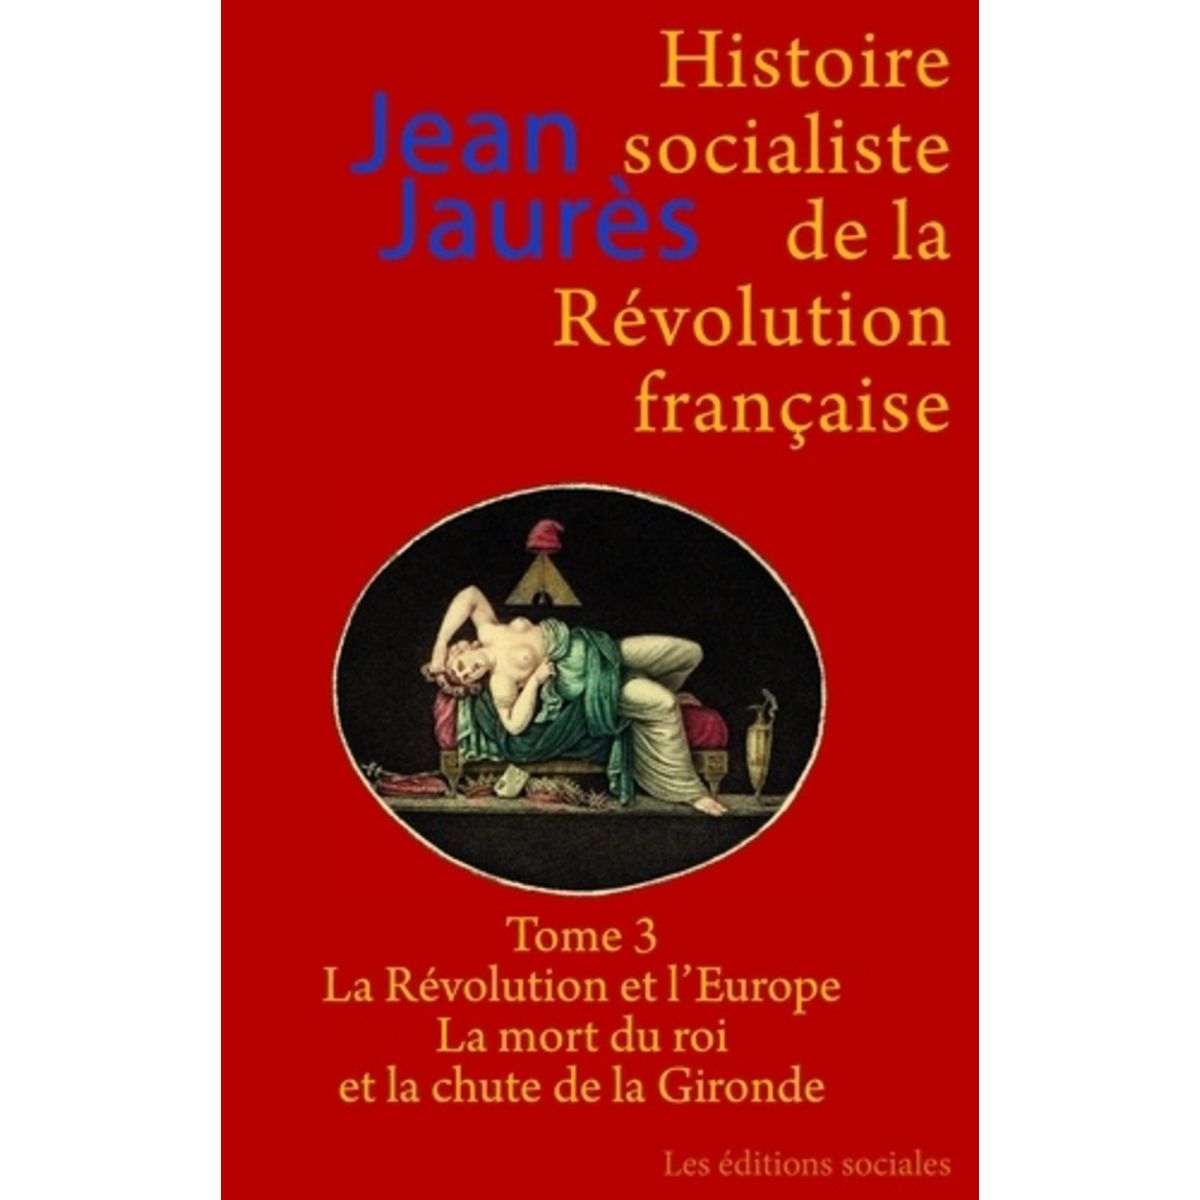  HISTOIRE SOCIALISTE DE LA REVOLUTION FRANCAISE. TOME 3, LA REVOLUTION ET L'EUROPE ; LA MORT DU ROI ET LA CHUTE DE LA GIRONDE, Jaurès Jean